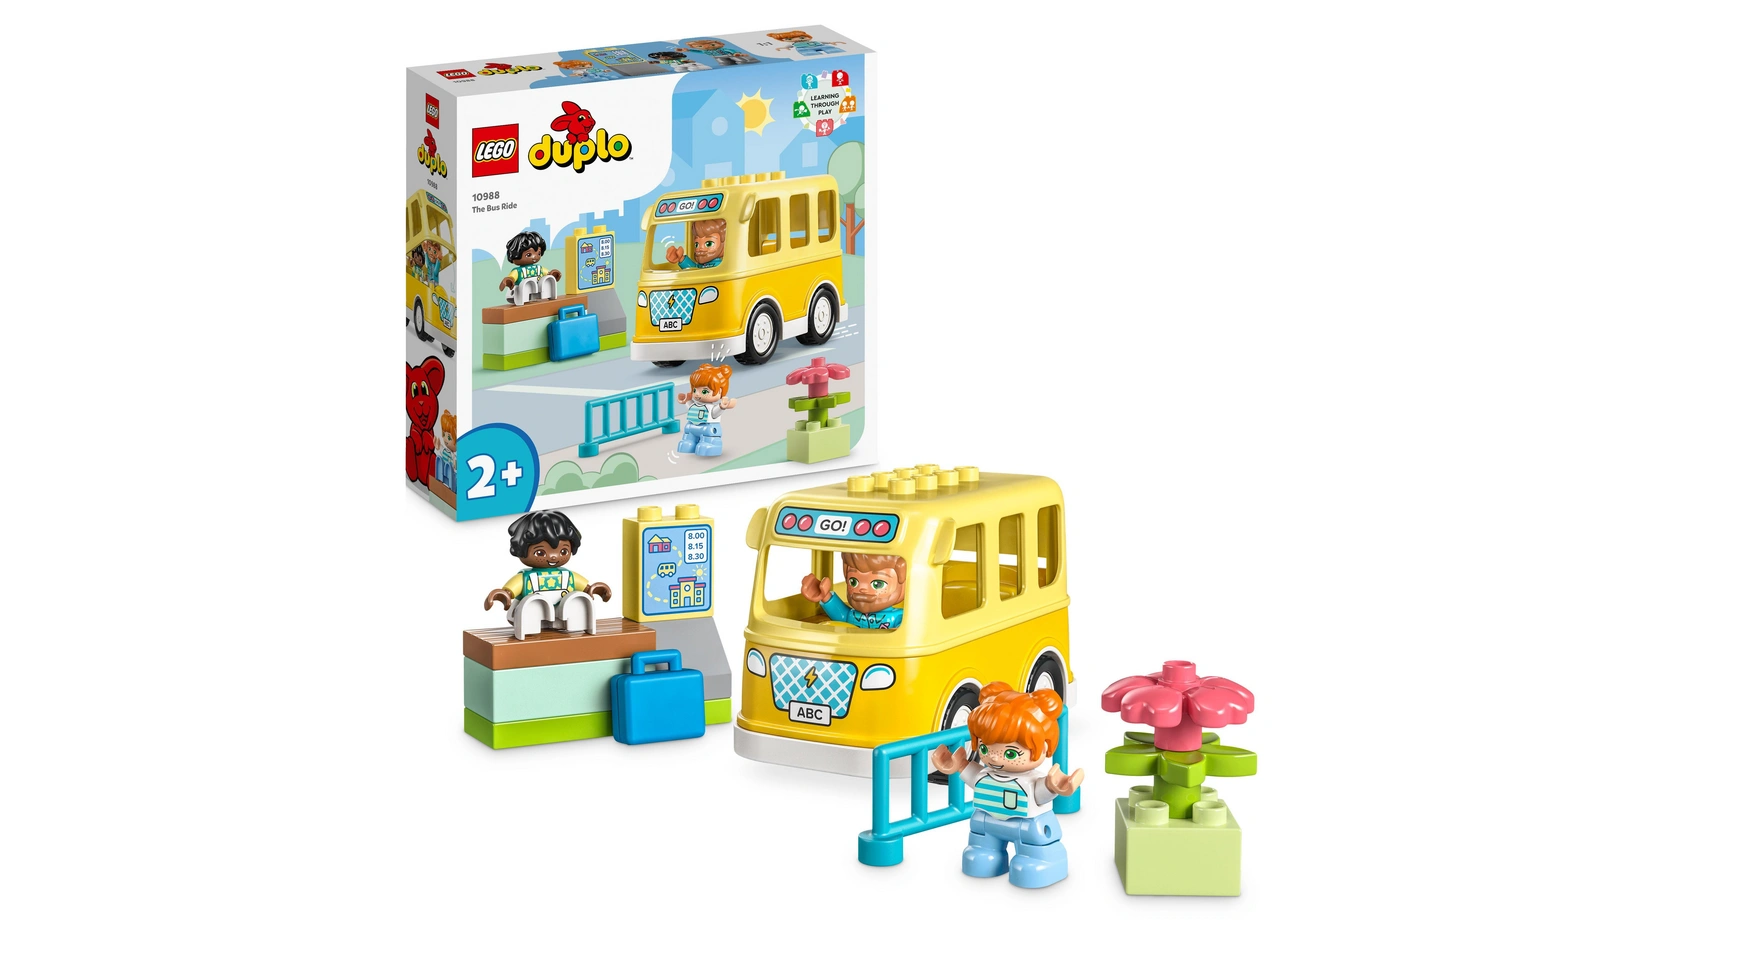 Lego DUPLO Поездка на автобусе, развивающая игрушка с игрушечным автобусом